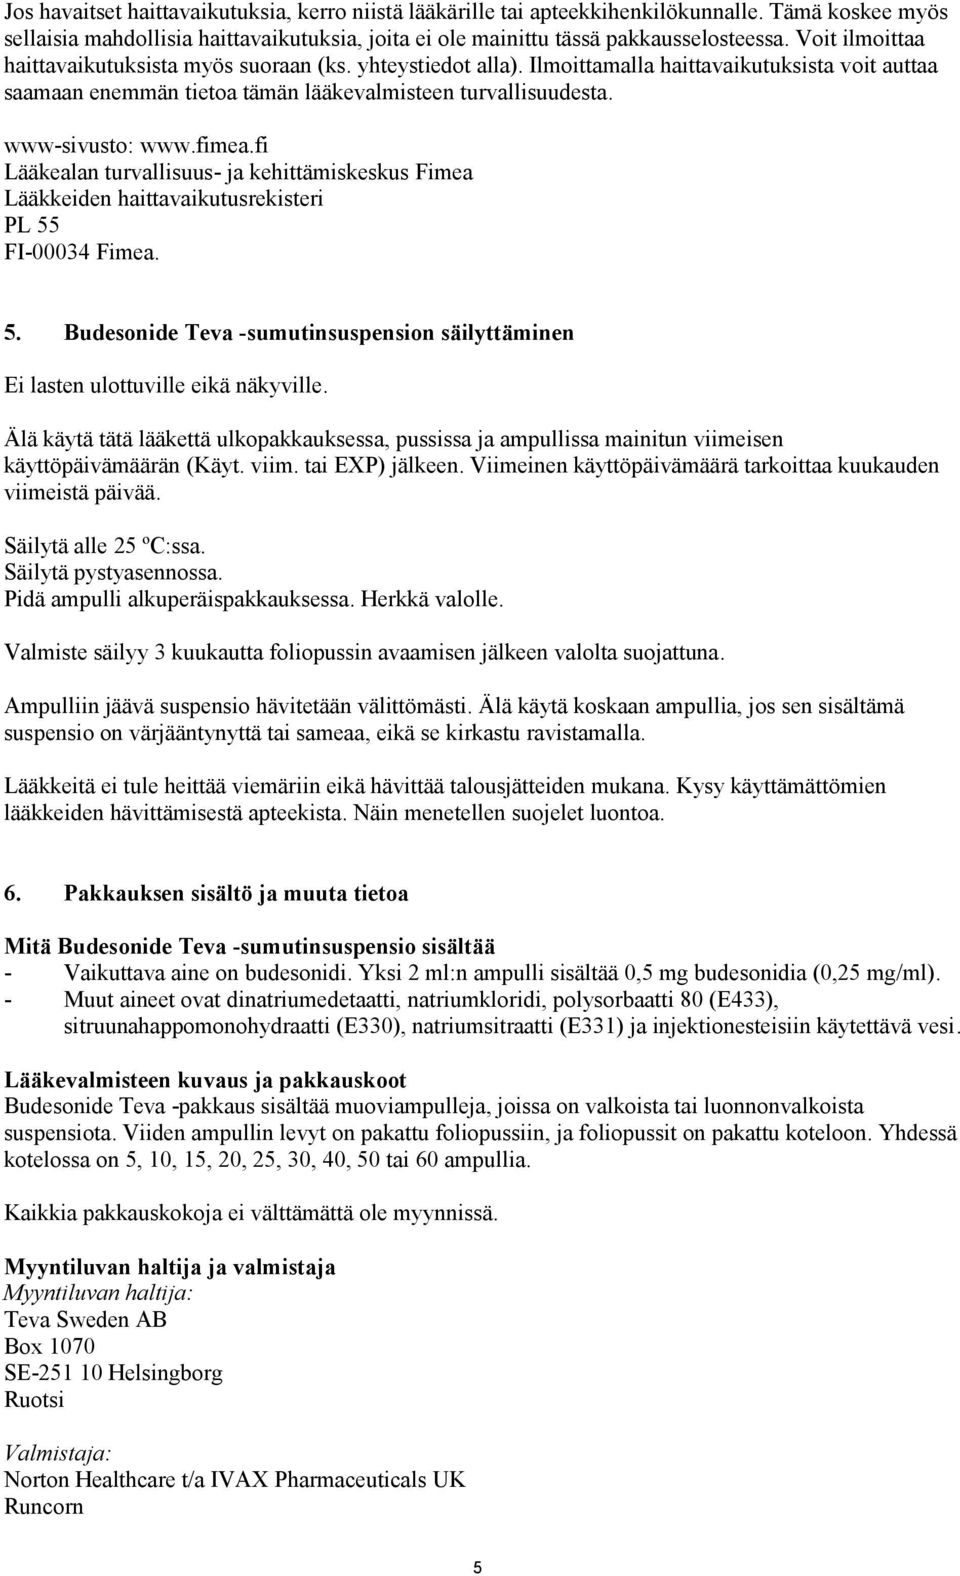 fimea.fi Lääkealan turvallisuus- ja kehittämiskeskus Fimea Lääkkeiden haittavaikutusrekisteri PL 55 FI-00034 Fimea. 5. Budesonide Teva -sumutinsuspension säilyttäminen Ei lasten ulottuville eikä näkyville.